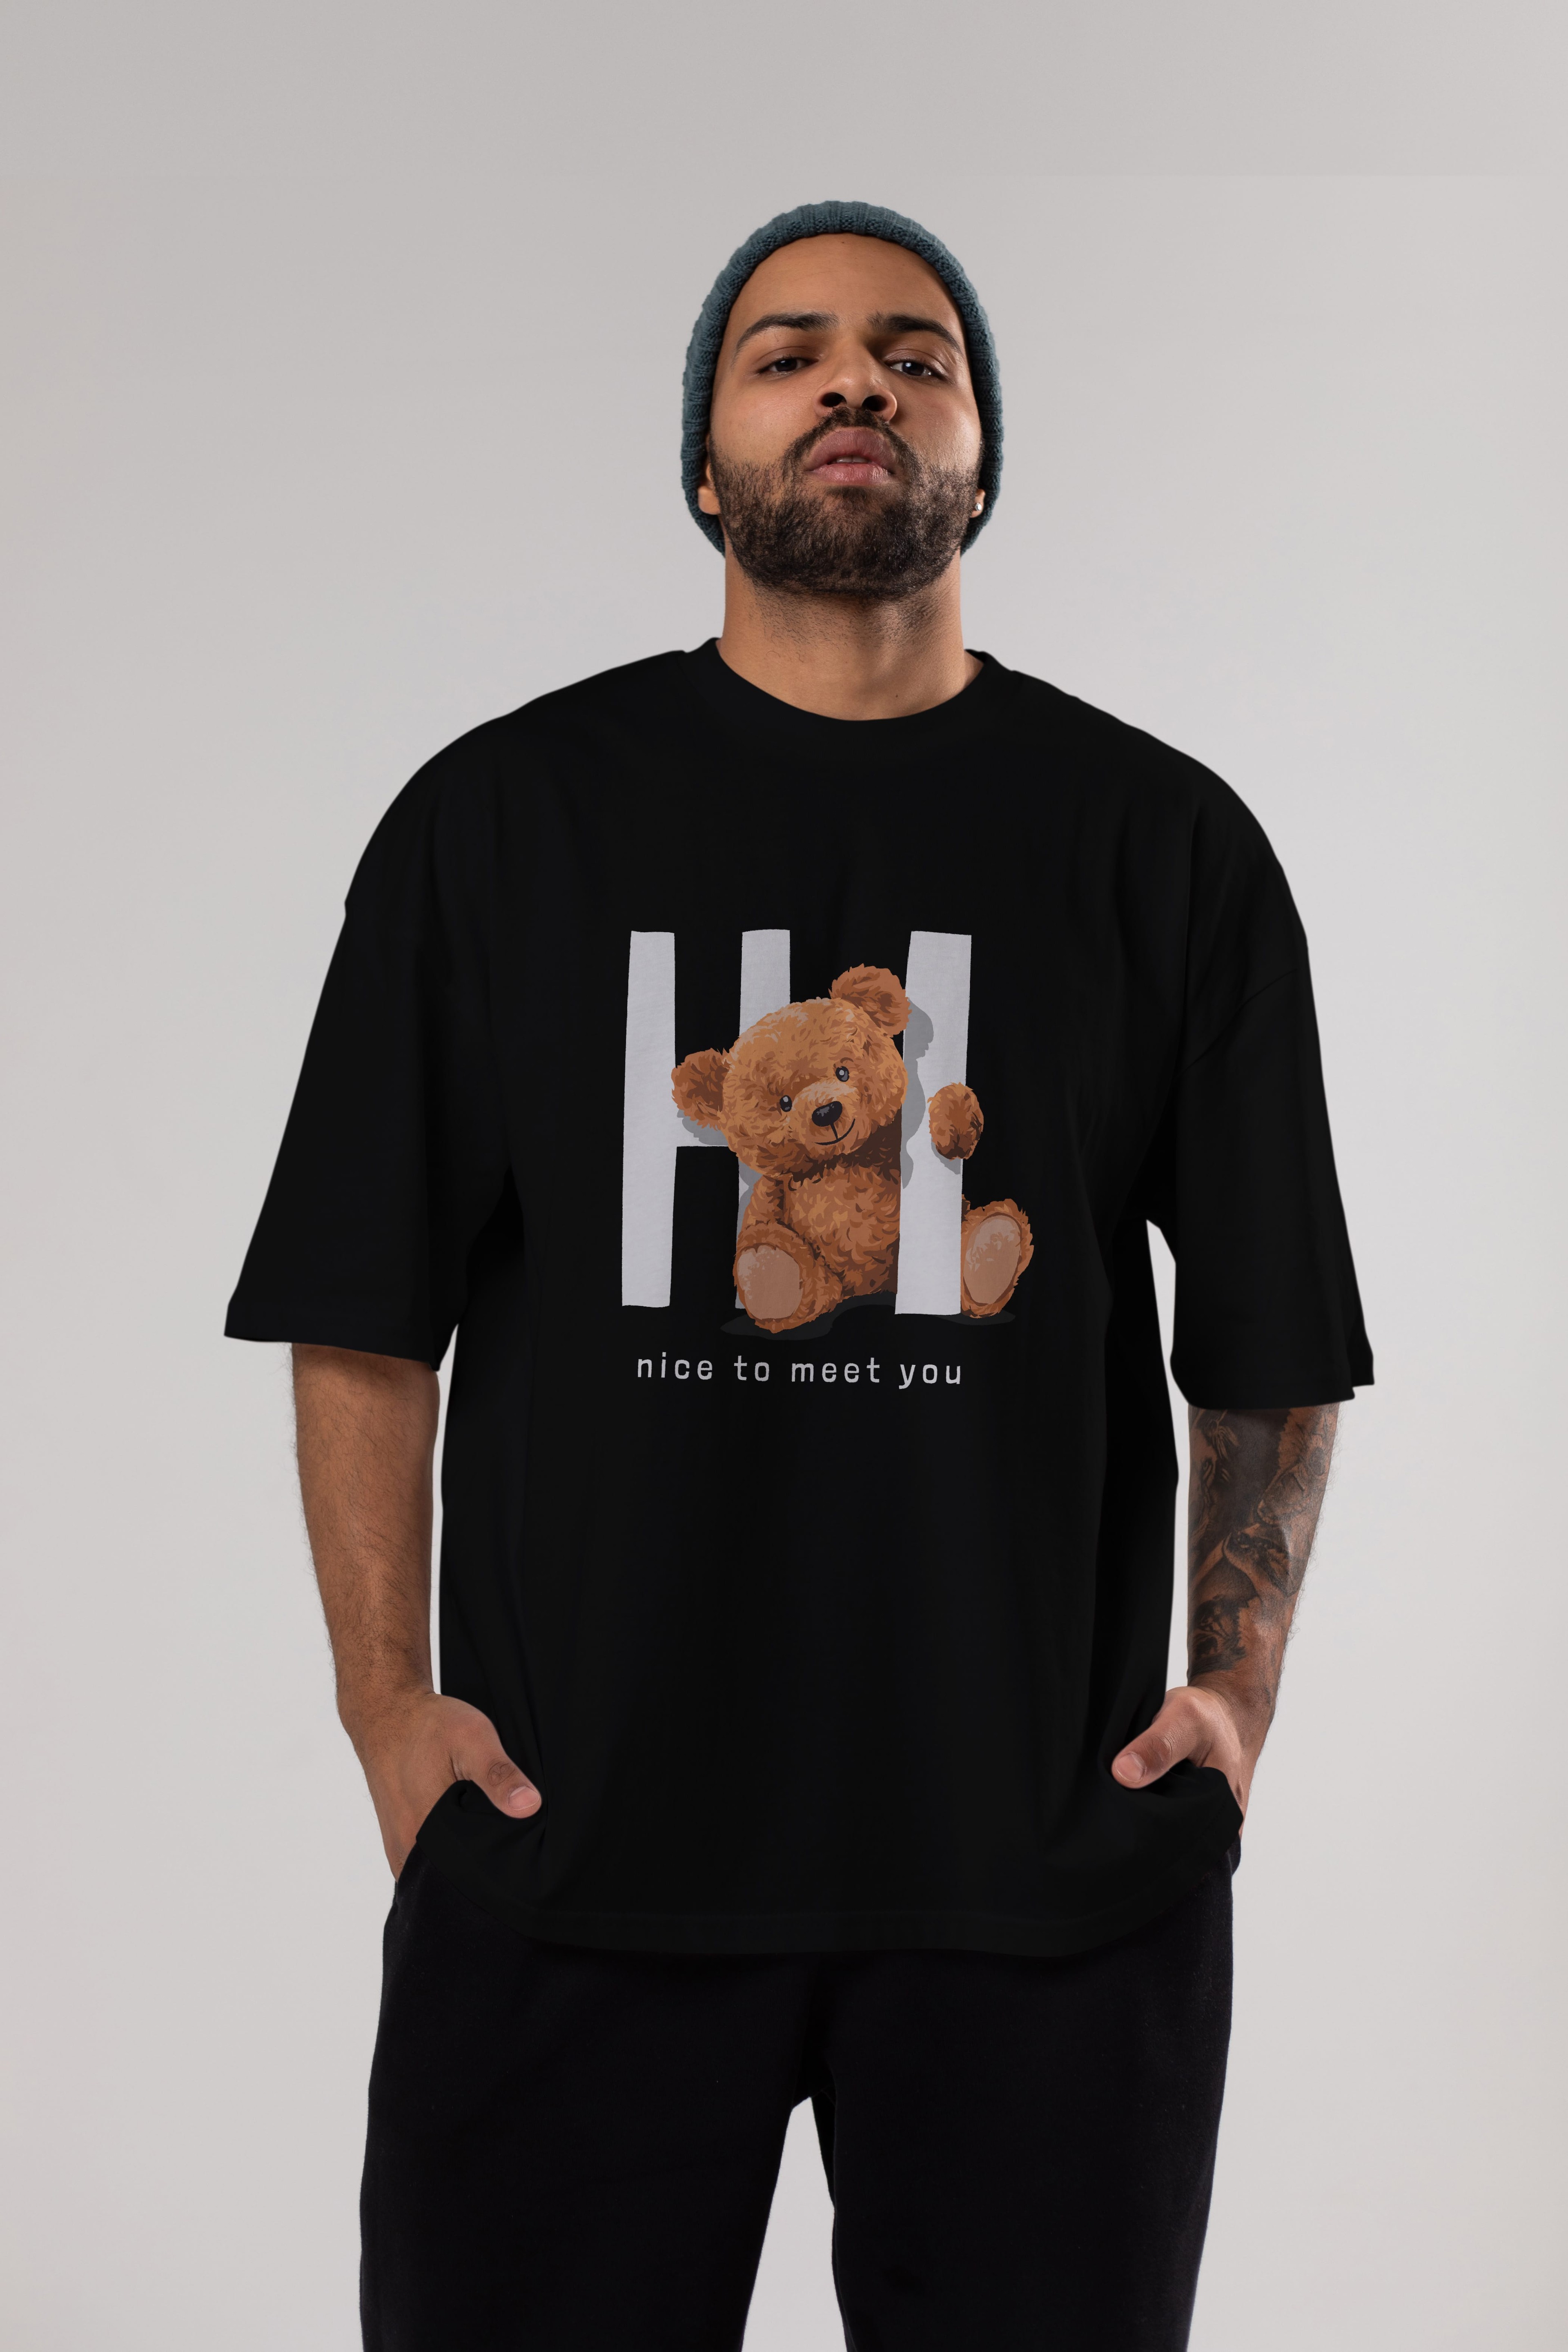 Teddy Bear Hi Nice To Meet You Ön Baskılı Oversize t-shirt Erkek Kadın Unisex %100 Pamuk